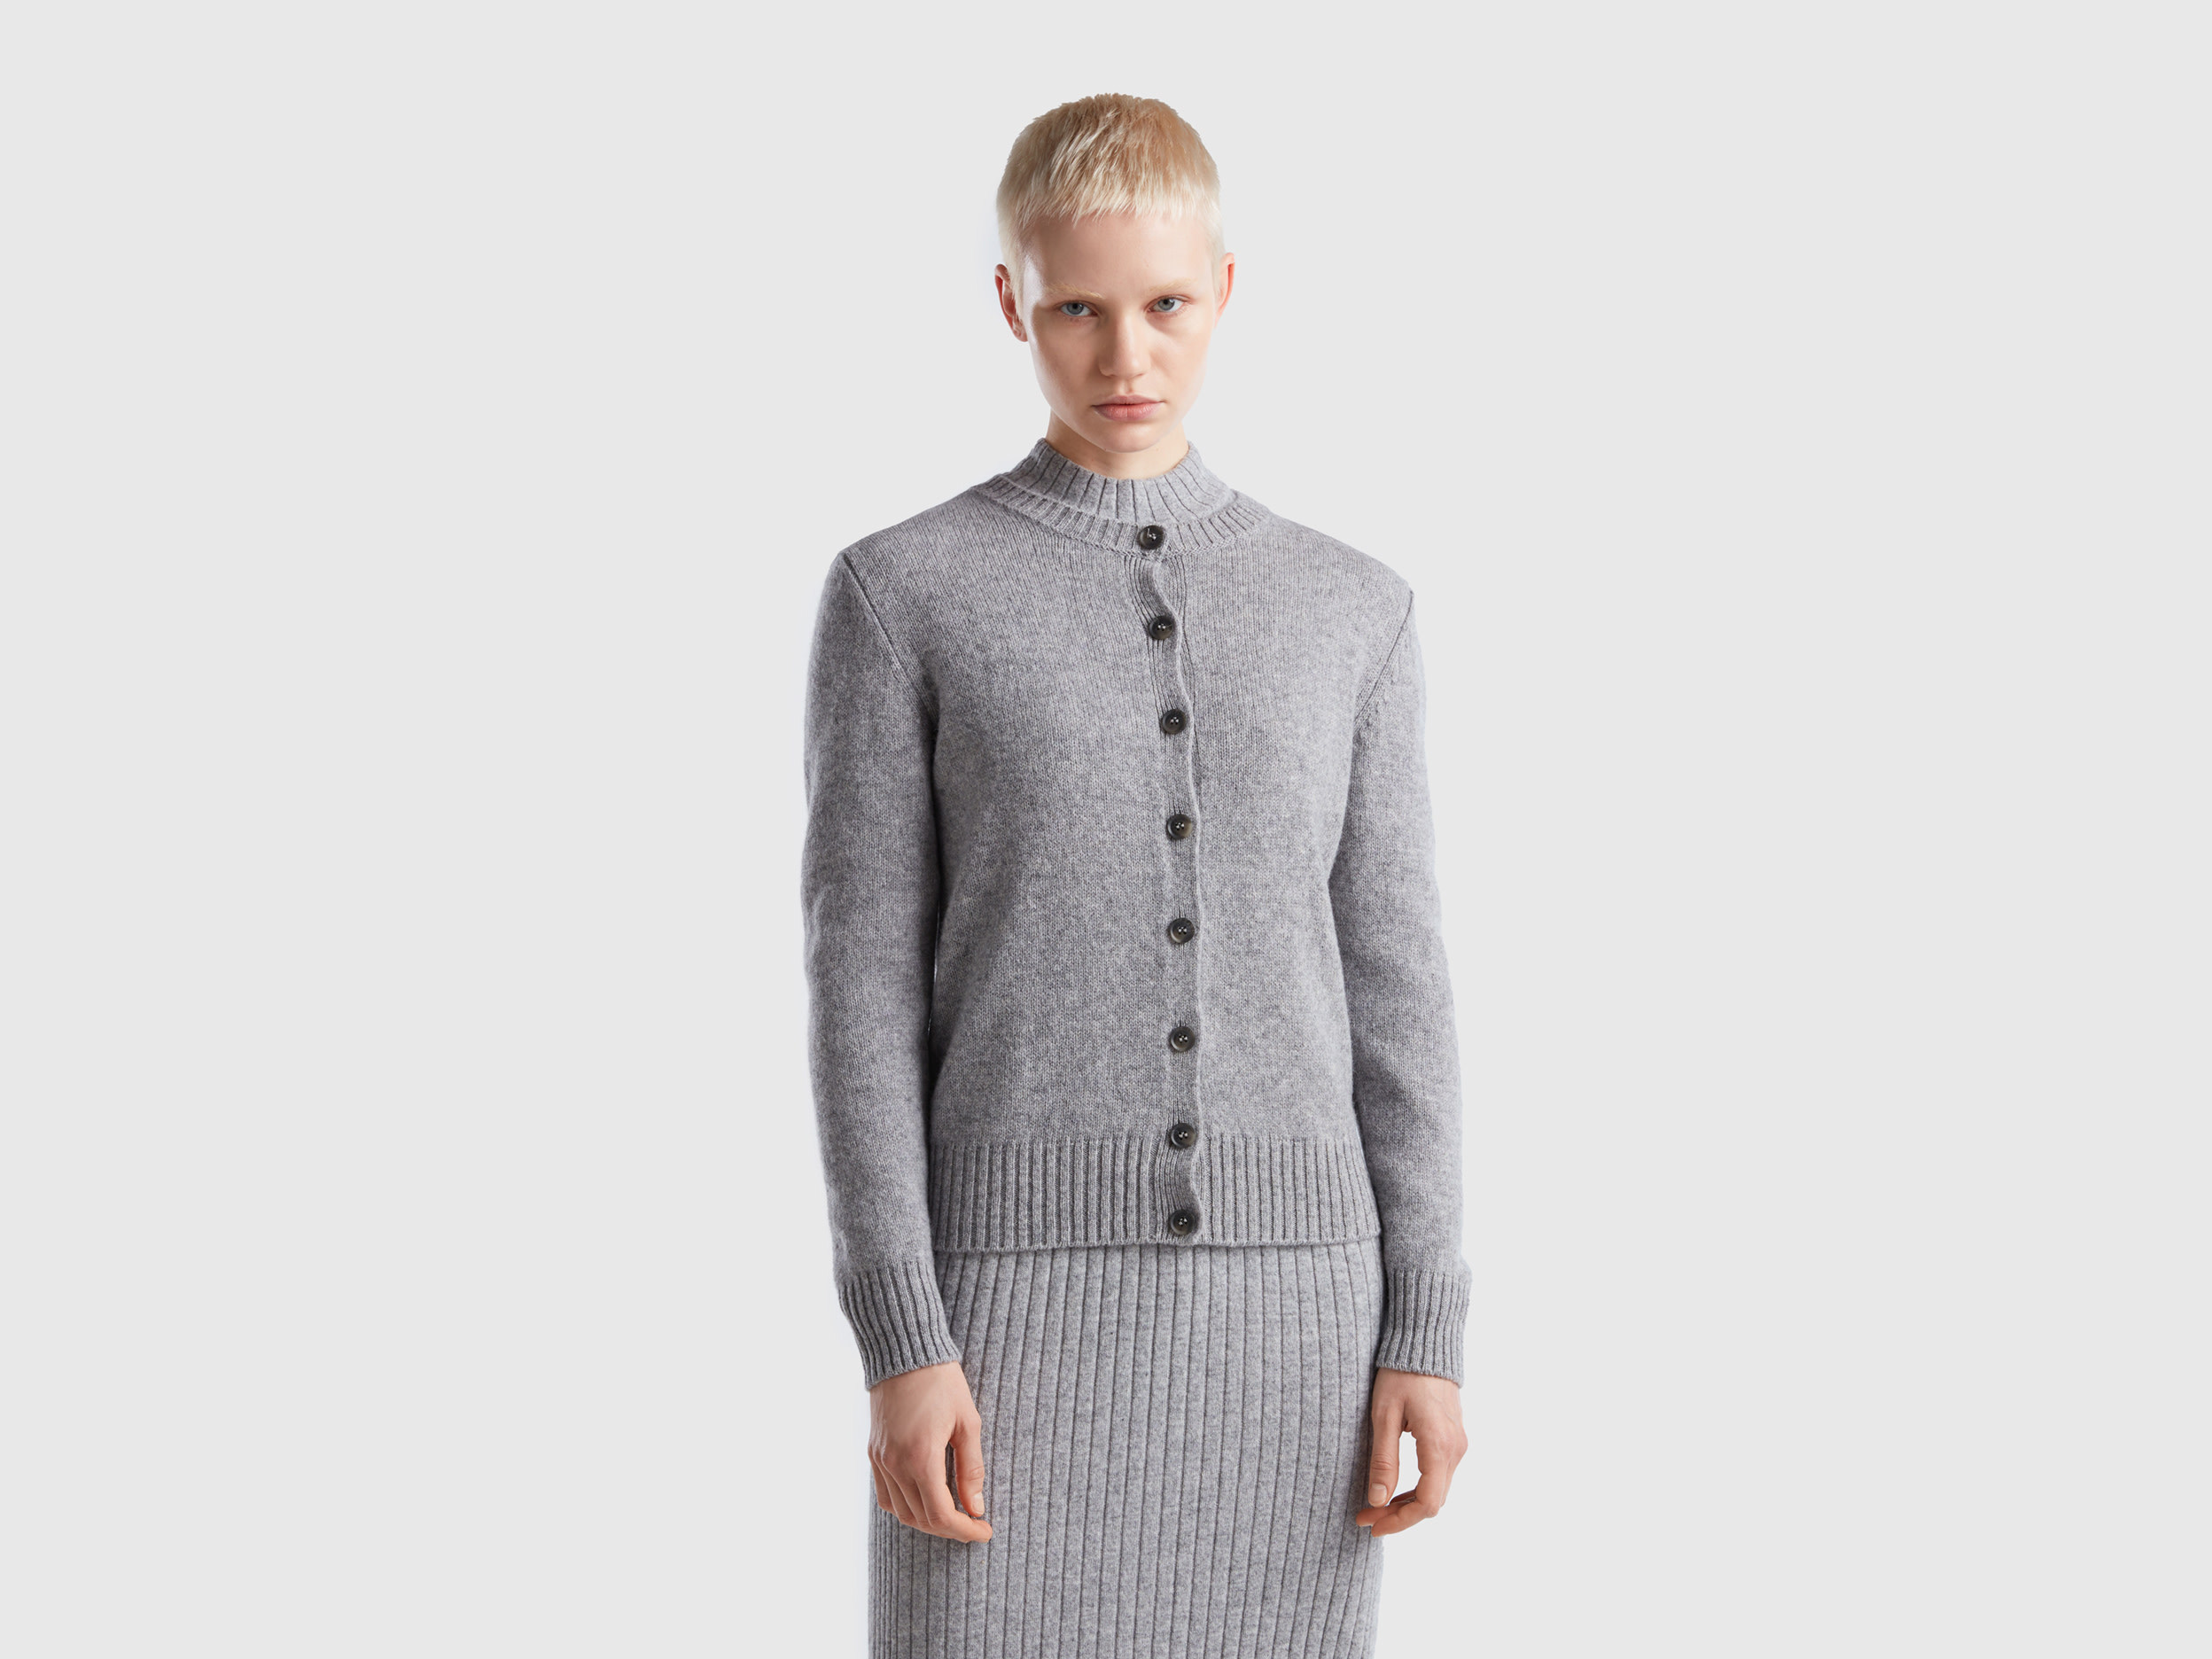 Benetton, Cardigan In Pure Shetland Wool, size M, Light Gray, Women